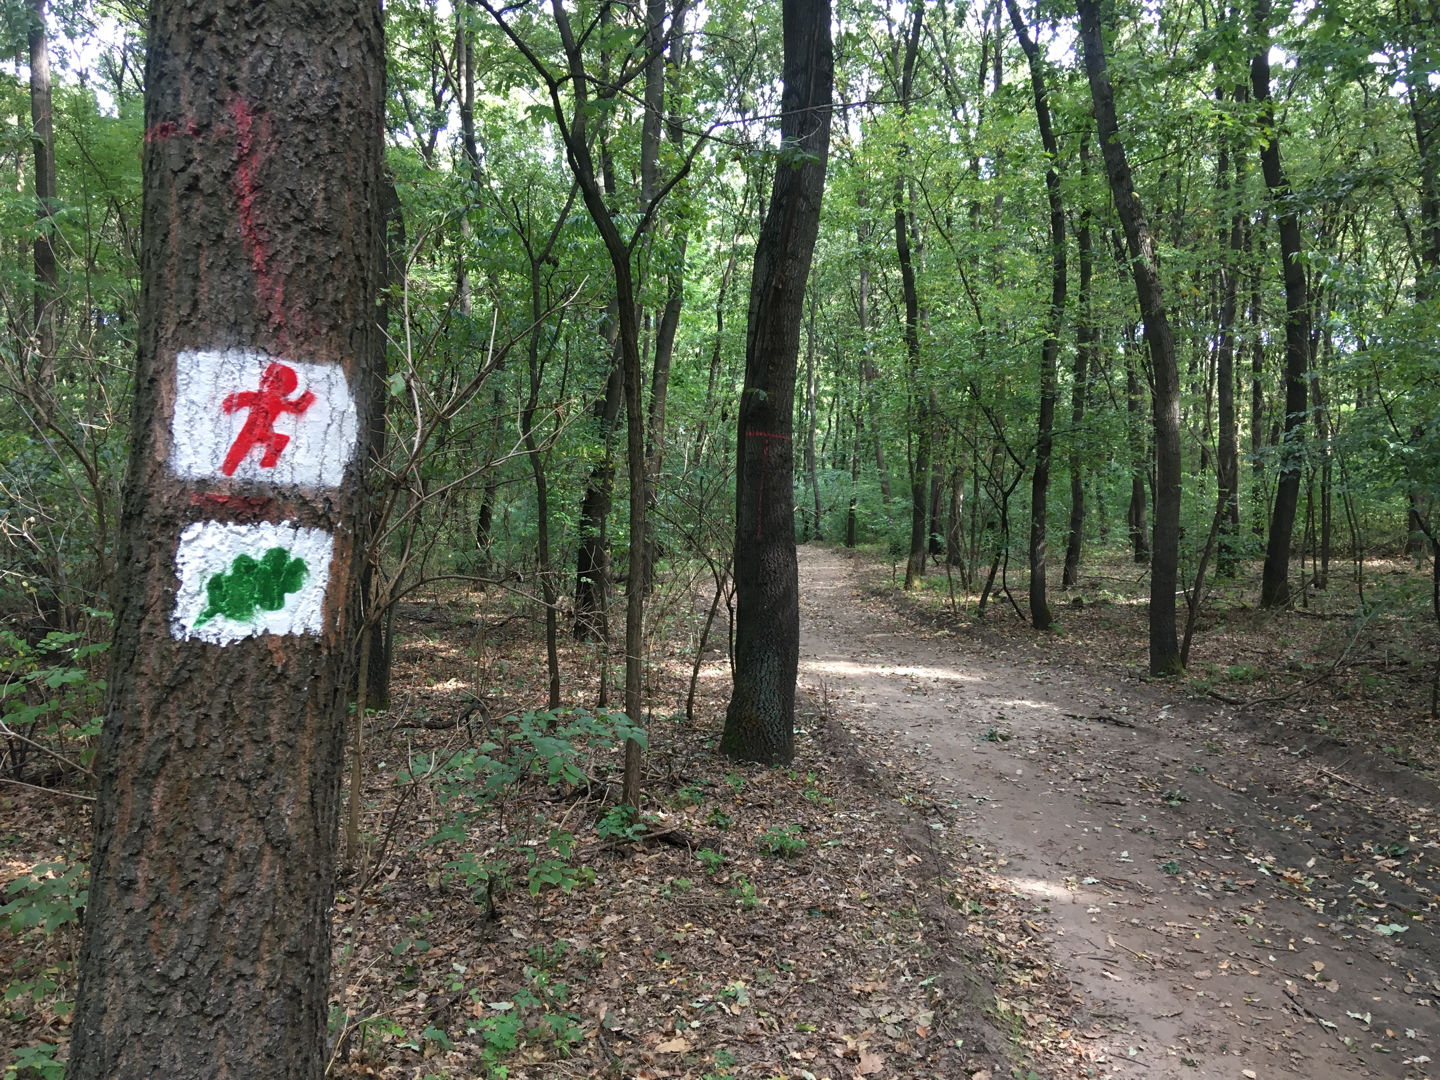 Keresztúri-erdő tanösvény keresztezi a futókört